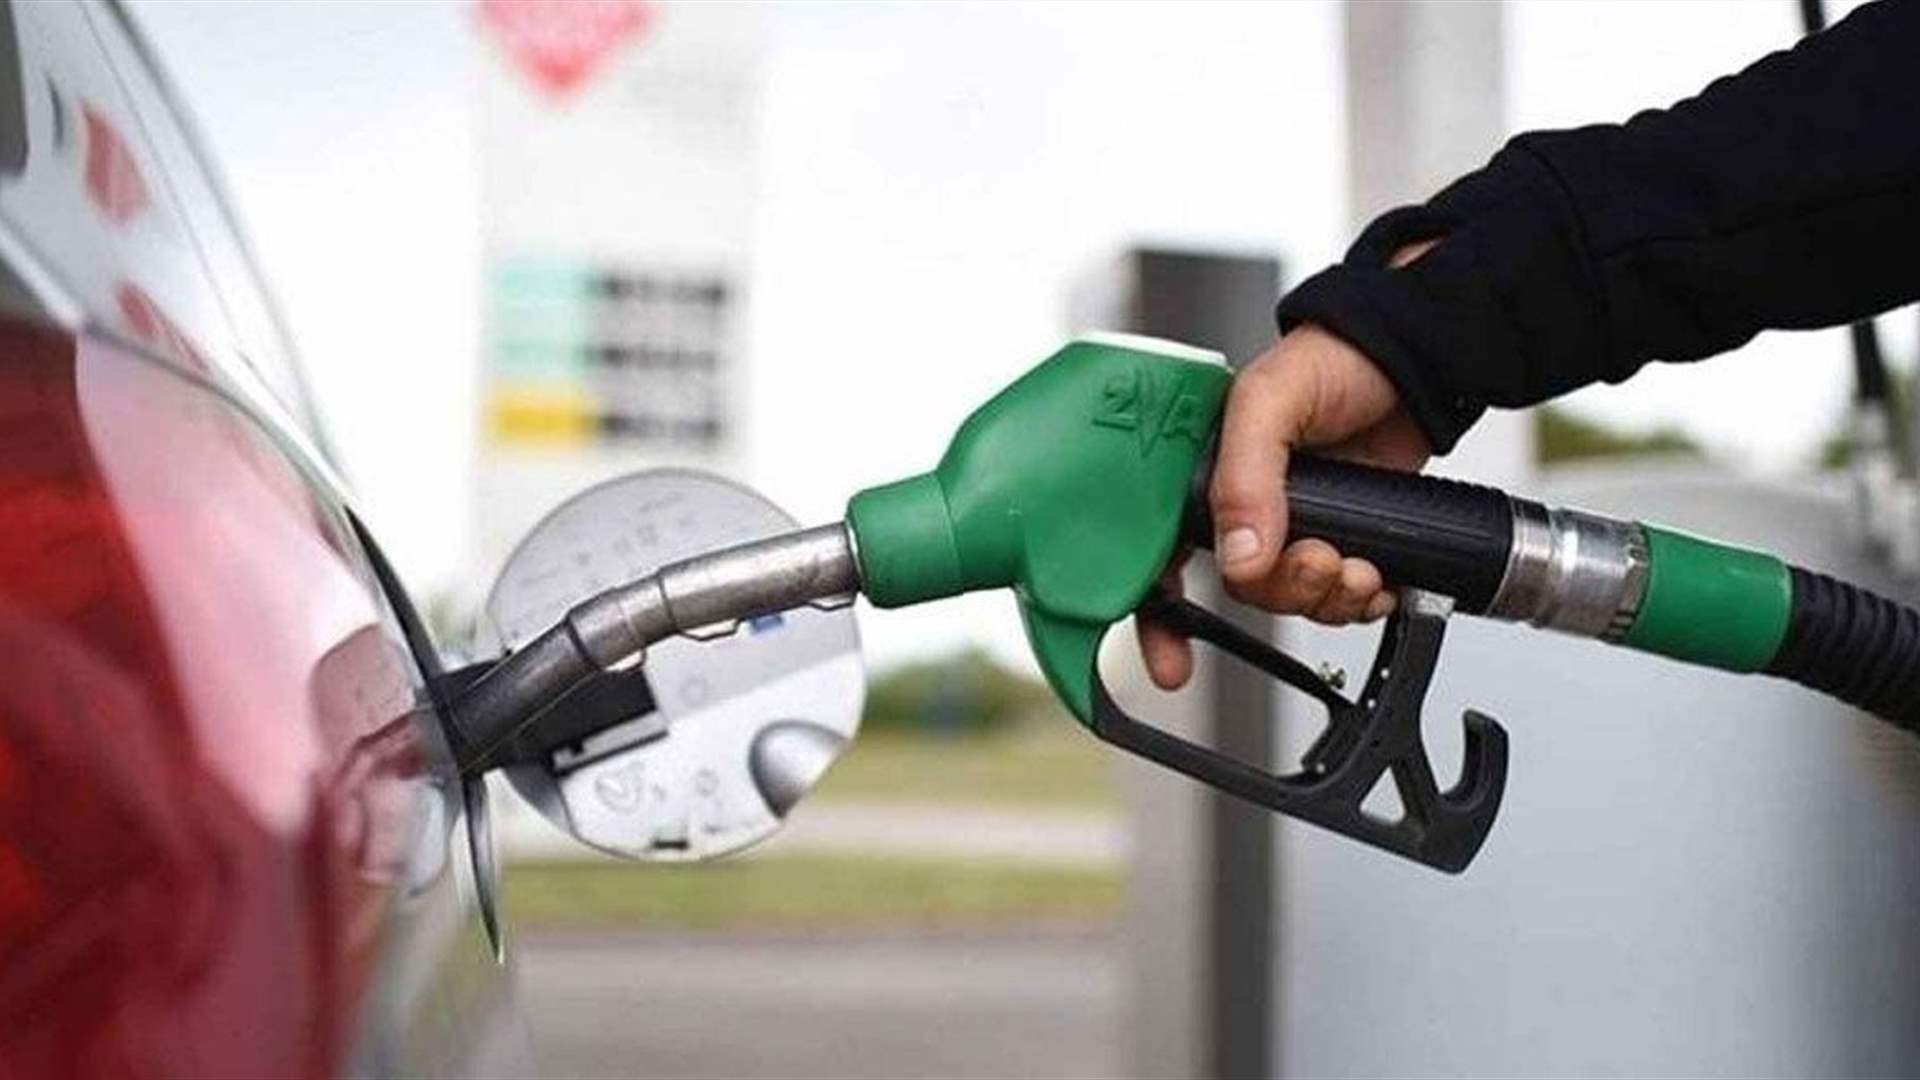 ارتفاع سعر المحروقات...ماذا عن الغاز؟